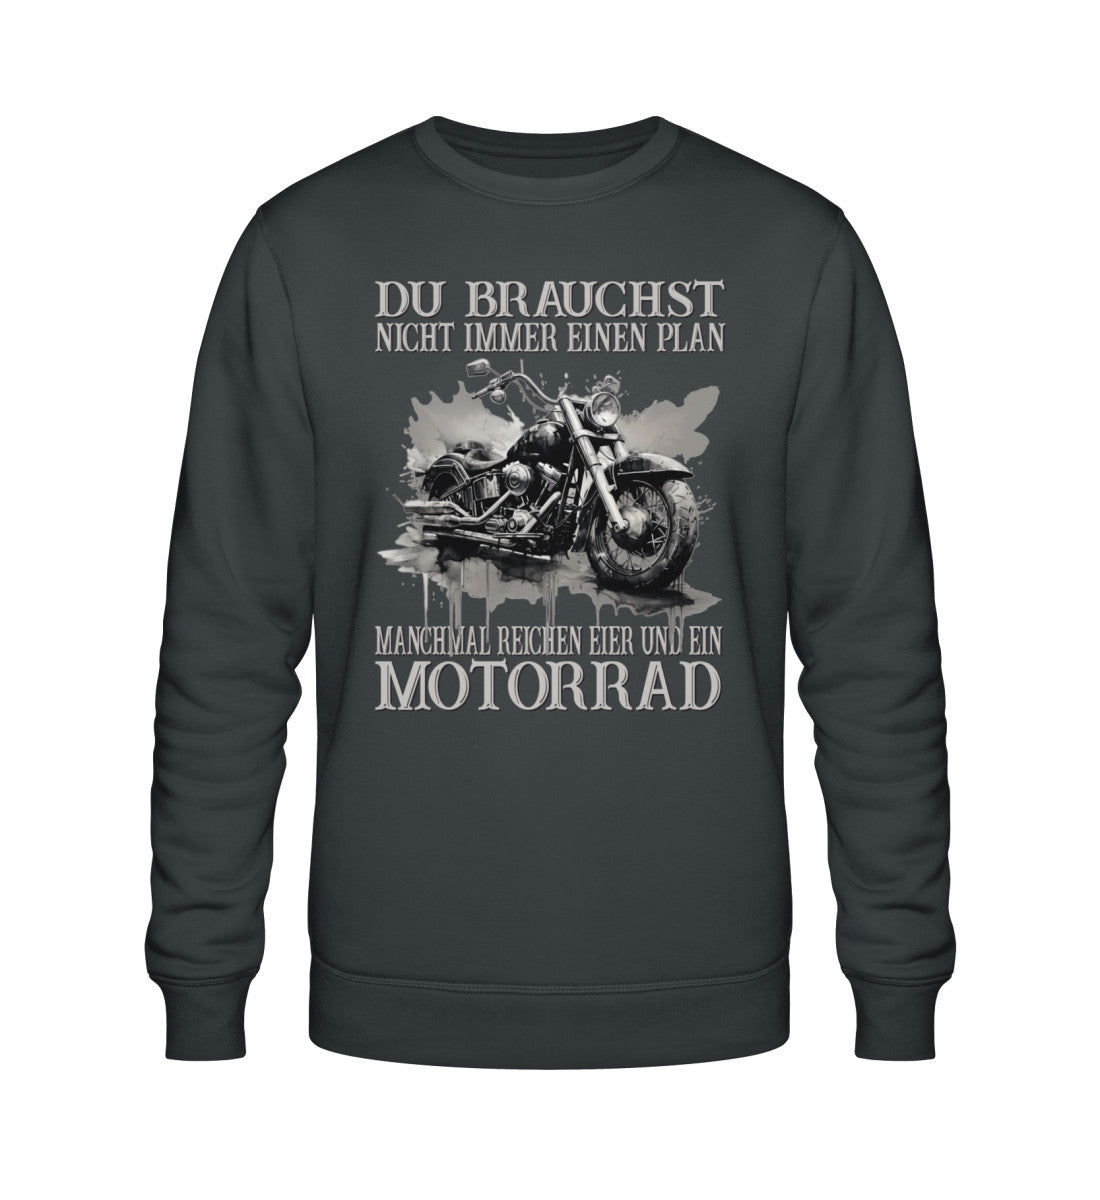 Ein Sweatshirt für Motorradfahrer von Wingbikers mit dem Aufdruck, Du brauchst nicht immer einen Plan - Manchmal reichen Eier und ein Motorrad, in dunkelgrau.